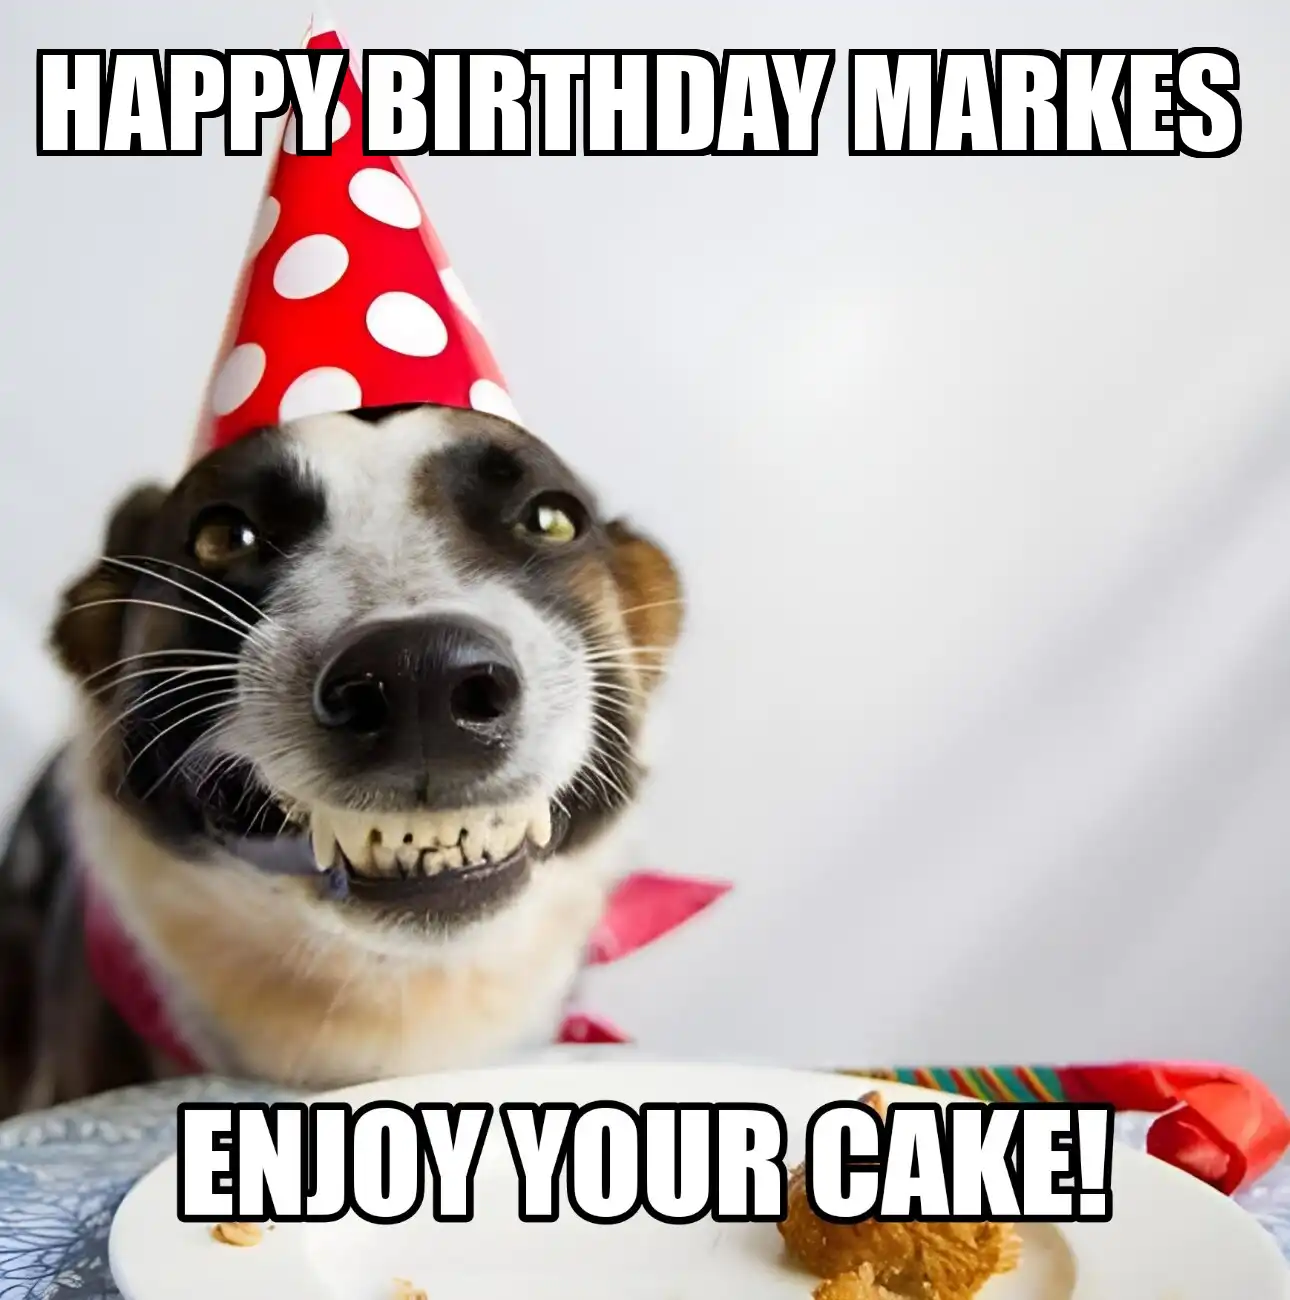 Happy Birthday Markes Enjoy Your Cake Dog Meme